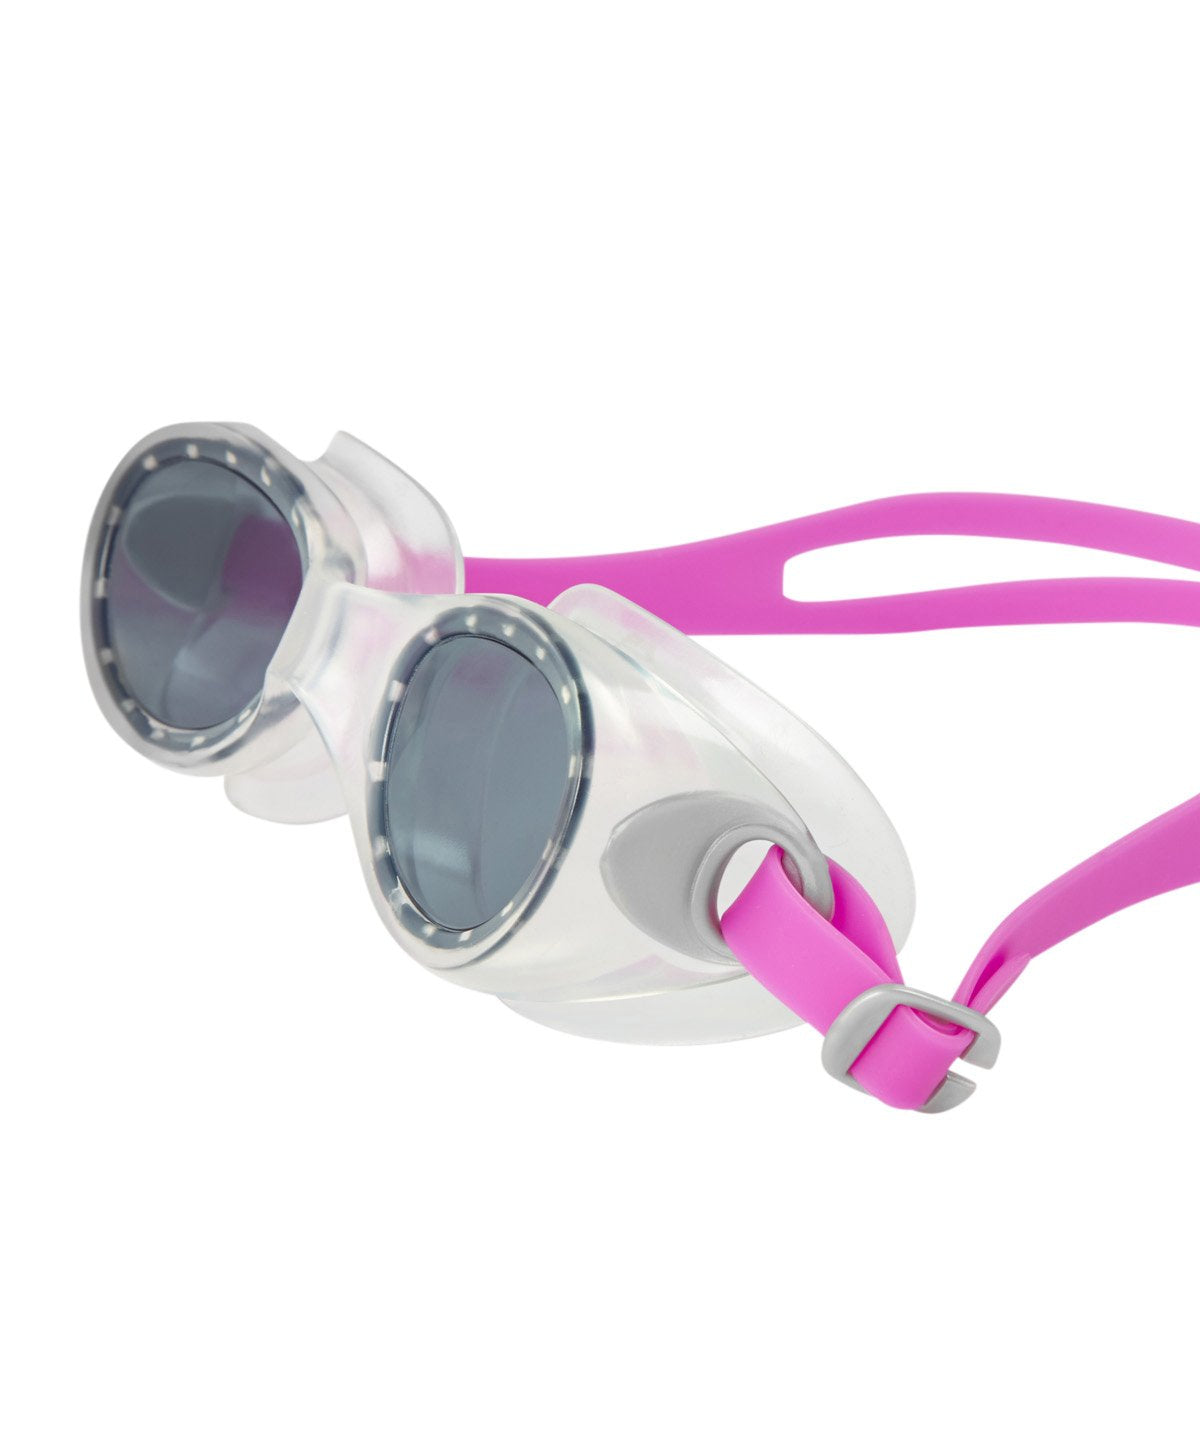 Speedo Unisex - Junior Futura Classic Junior Goggles - Best Price online Prokicksports.com